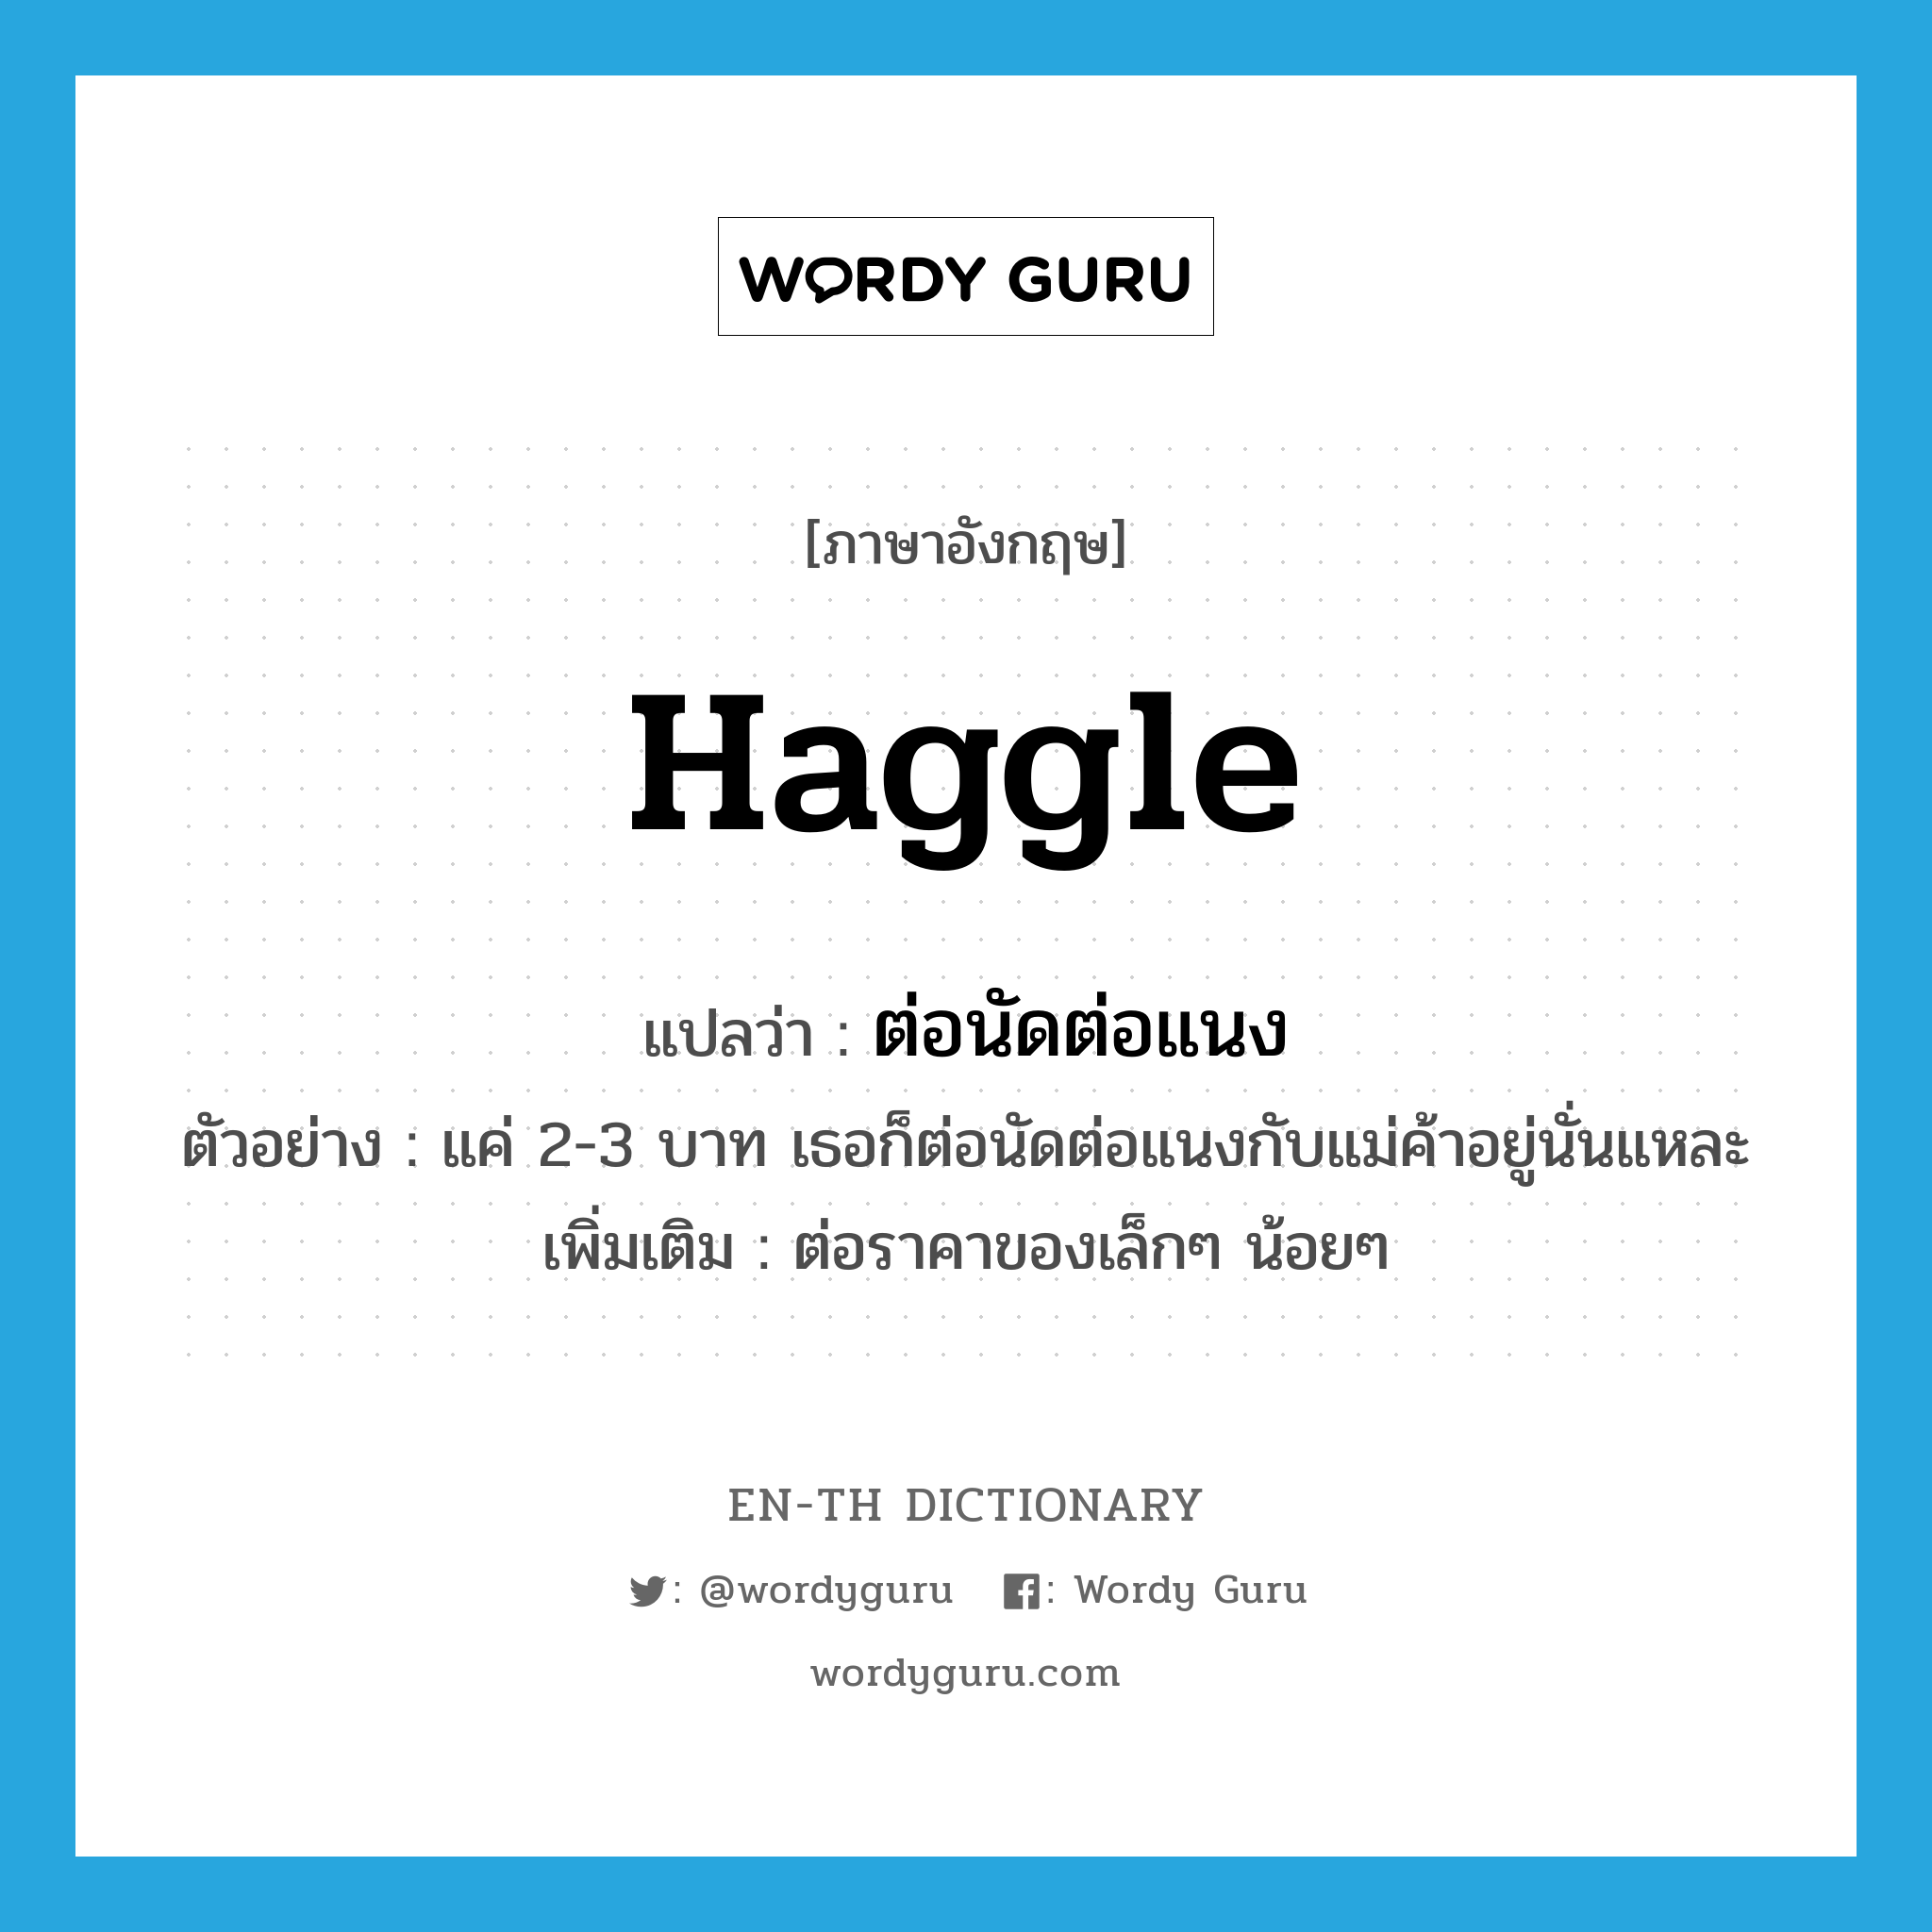 haggle แปลว่า?, คำศัพท์ภาษาอังกฤษ haggle แปลว่า ต่อนัดต่อแนง ประเภท V ตัวอย่าง แค่ 2-3 บาท เธอก็ต่อนัดต่อแนงกับแม่ค้าอยู่นั่นแหละ เพิ่มเติม ต่อราคาของเล็กๆ น้อยๆ หมวด V